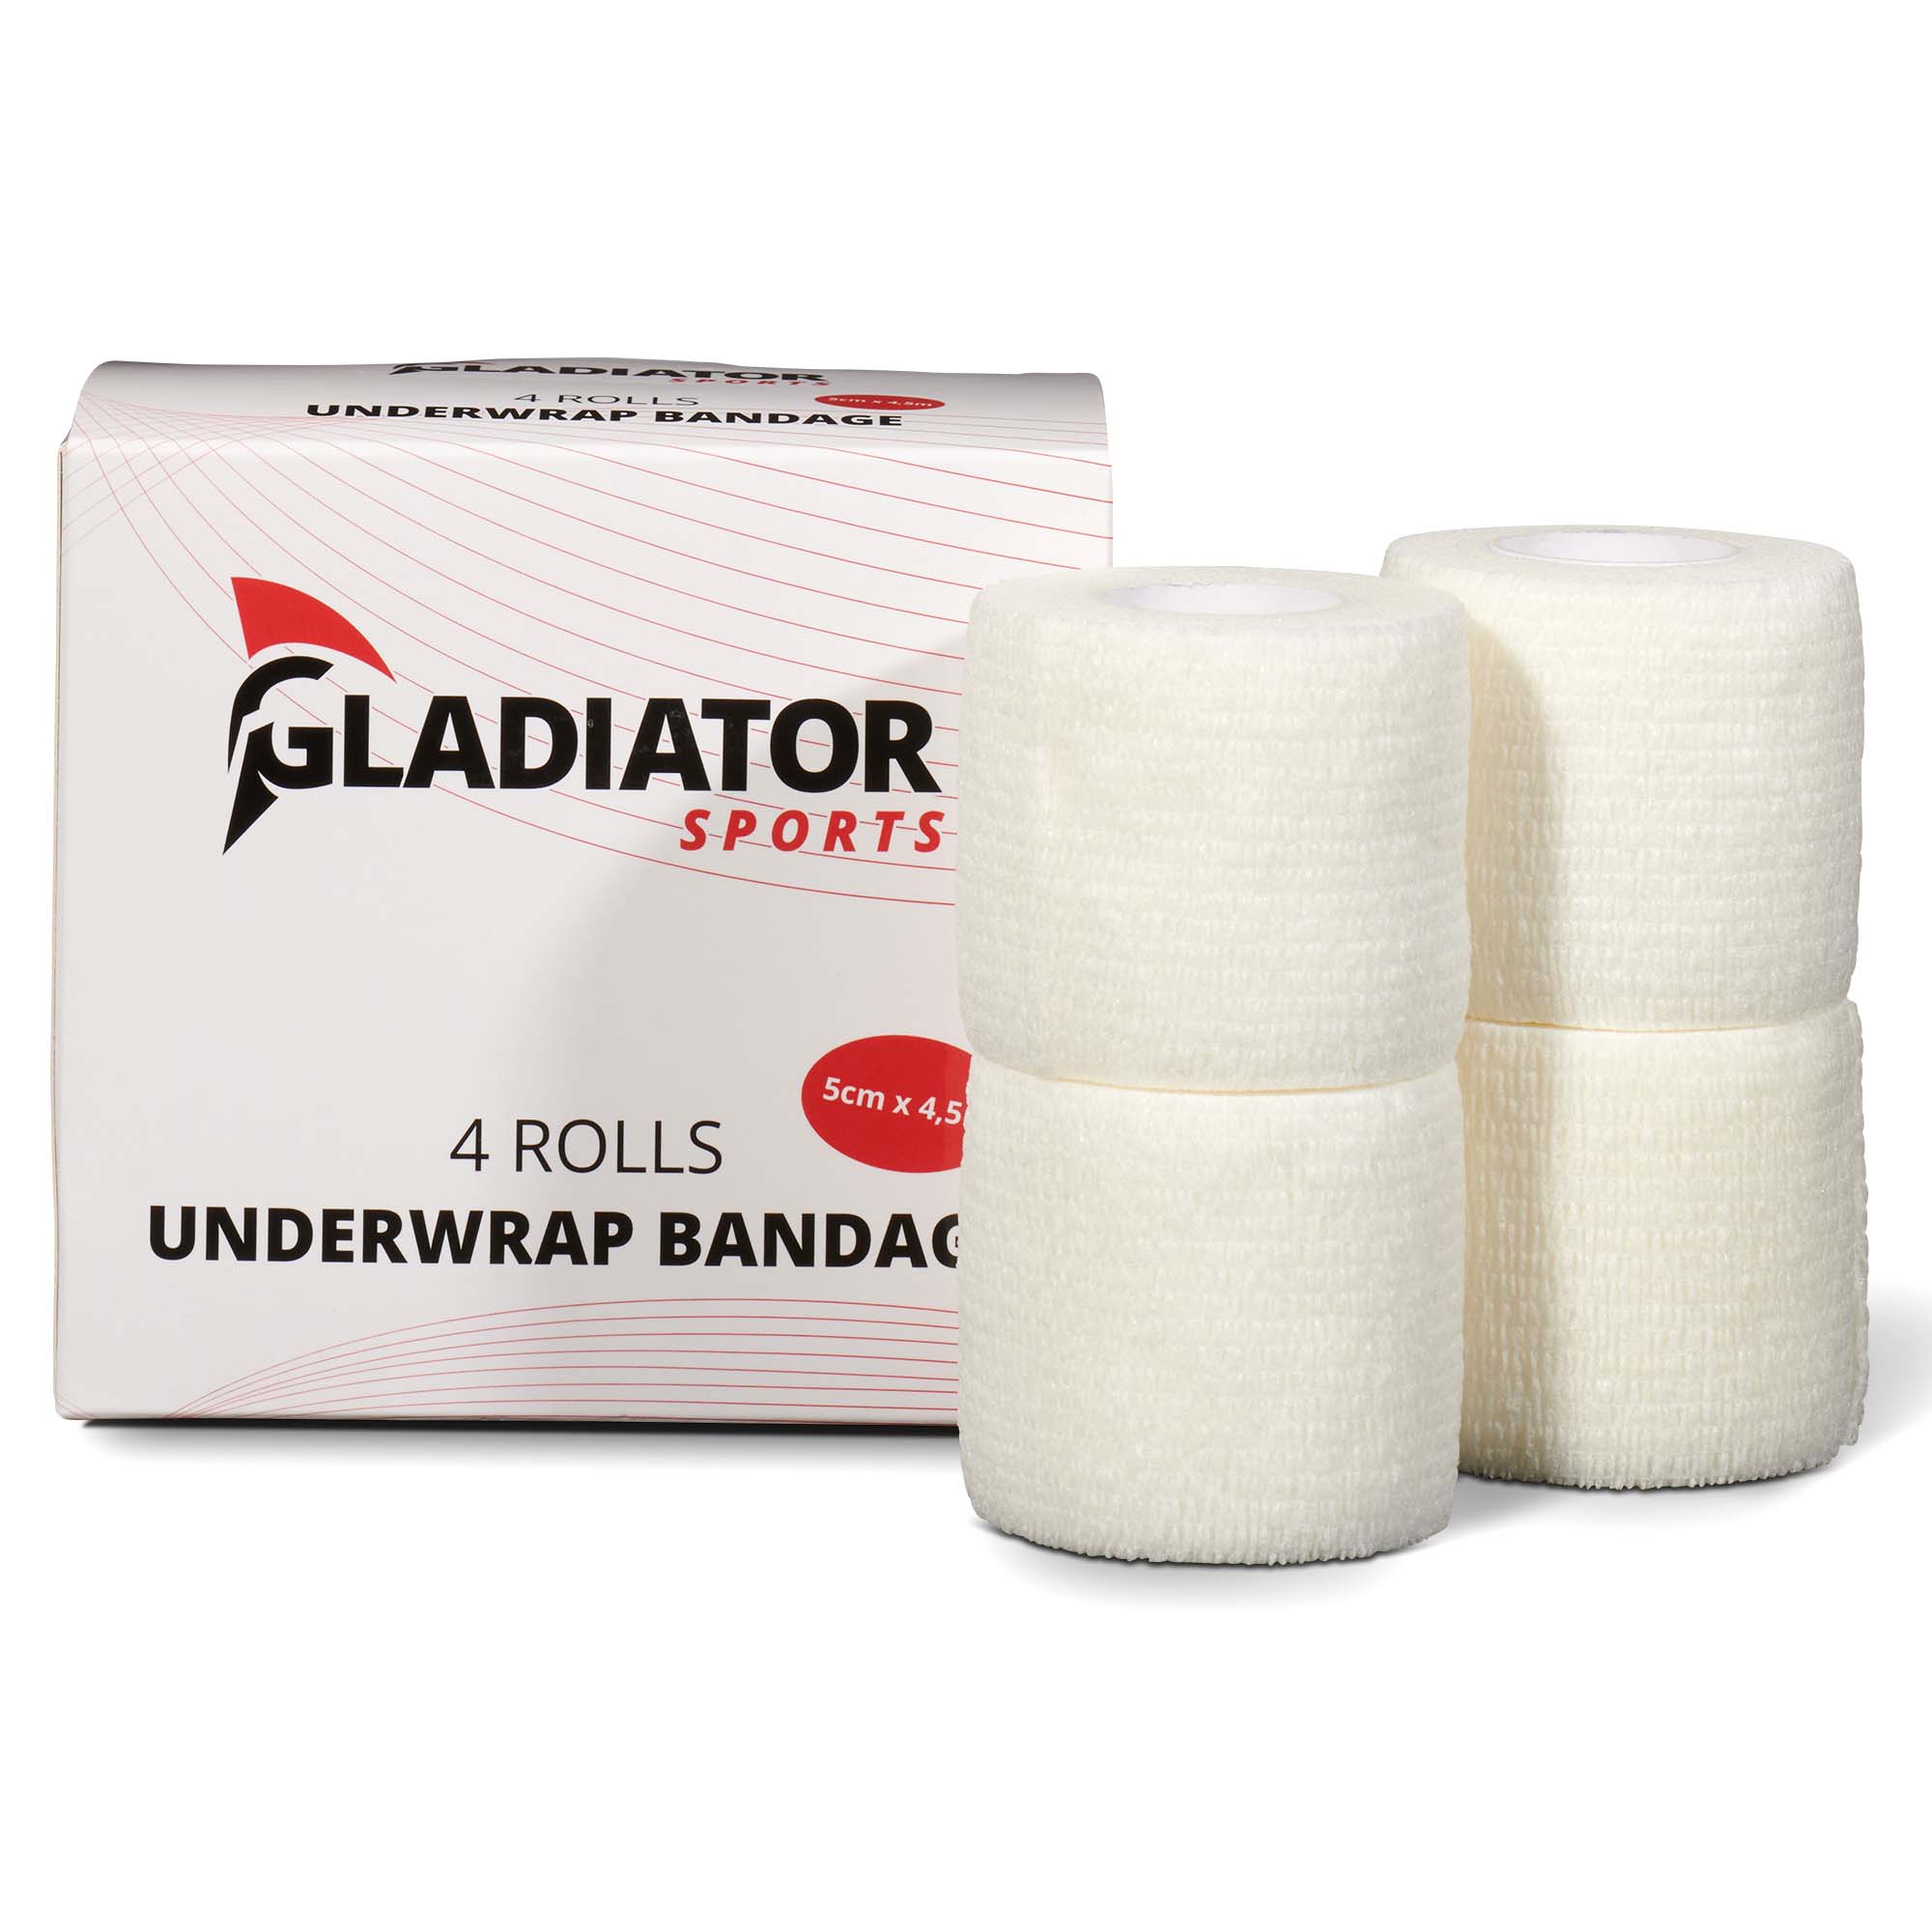 Gladiator Sports underwrap bandage 4 rolls with box white